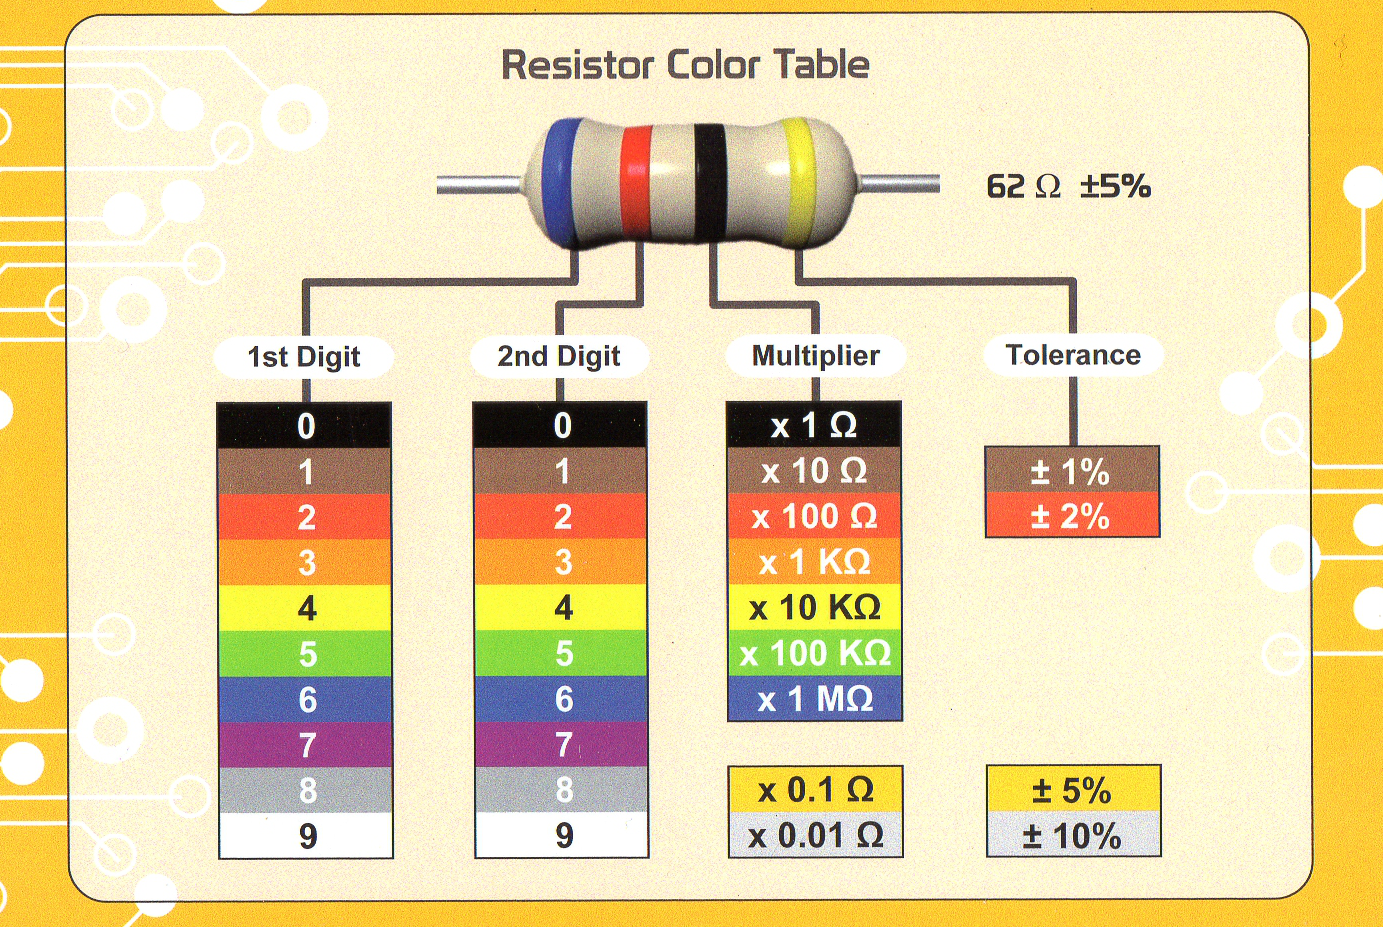 Color marking. СМД 103 номинал резистор. Цветовая маркировка резисторов 4 полосы. Резистор 560 ом 0.25 Вт цветовая маркировка. Резистор на 300 ом цветовая маркировка.